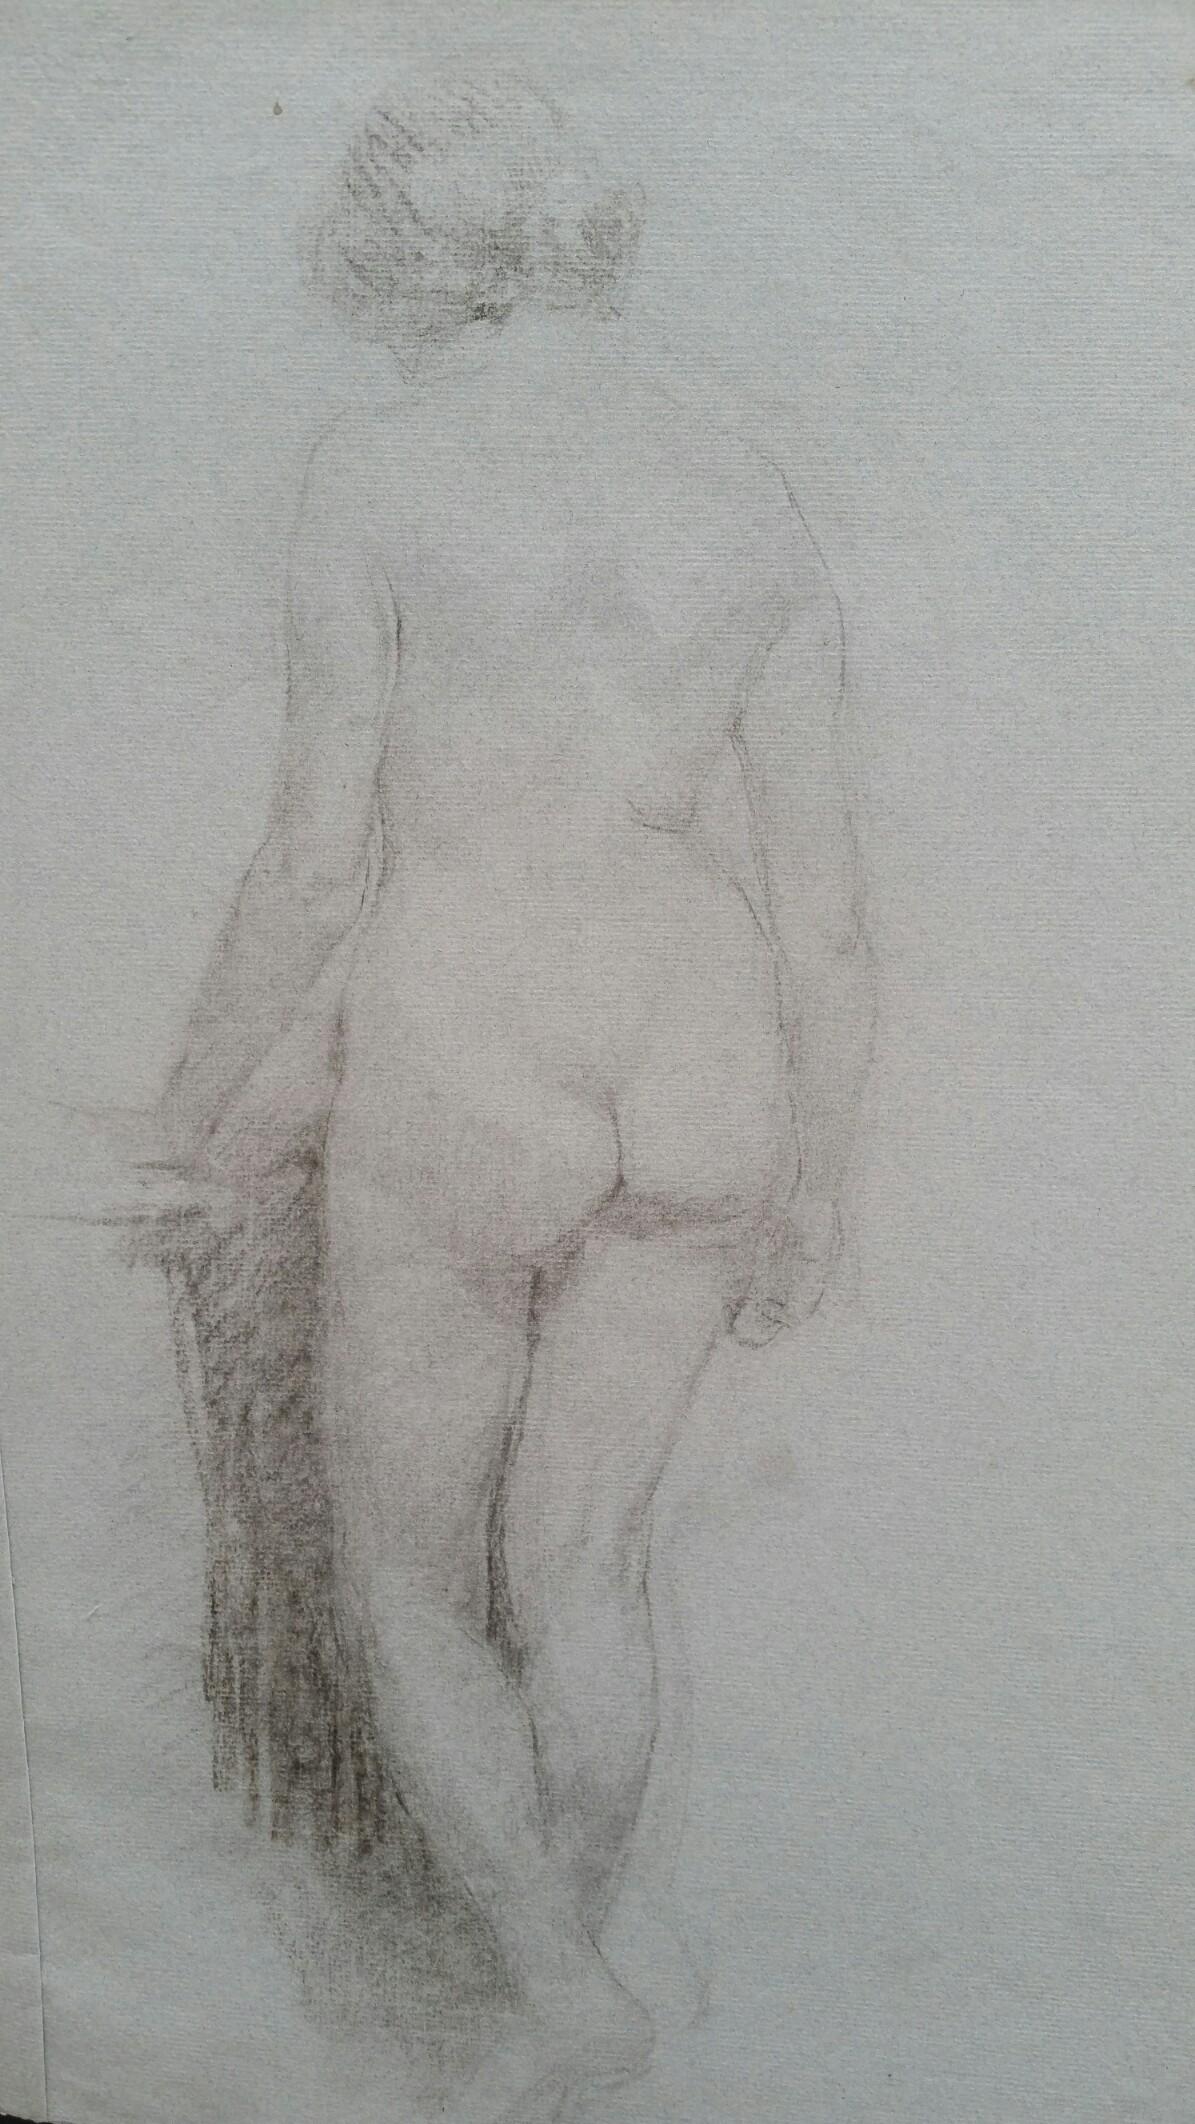 Portrait en graphite anglais d'une femme nue, vue d'arrière